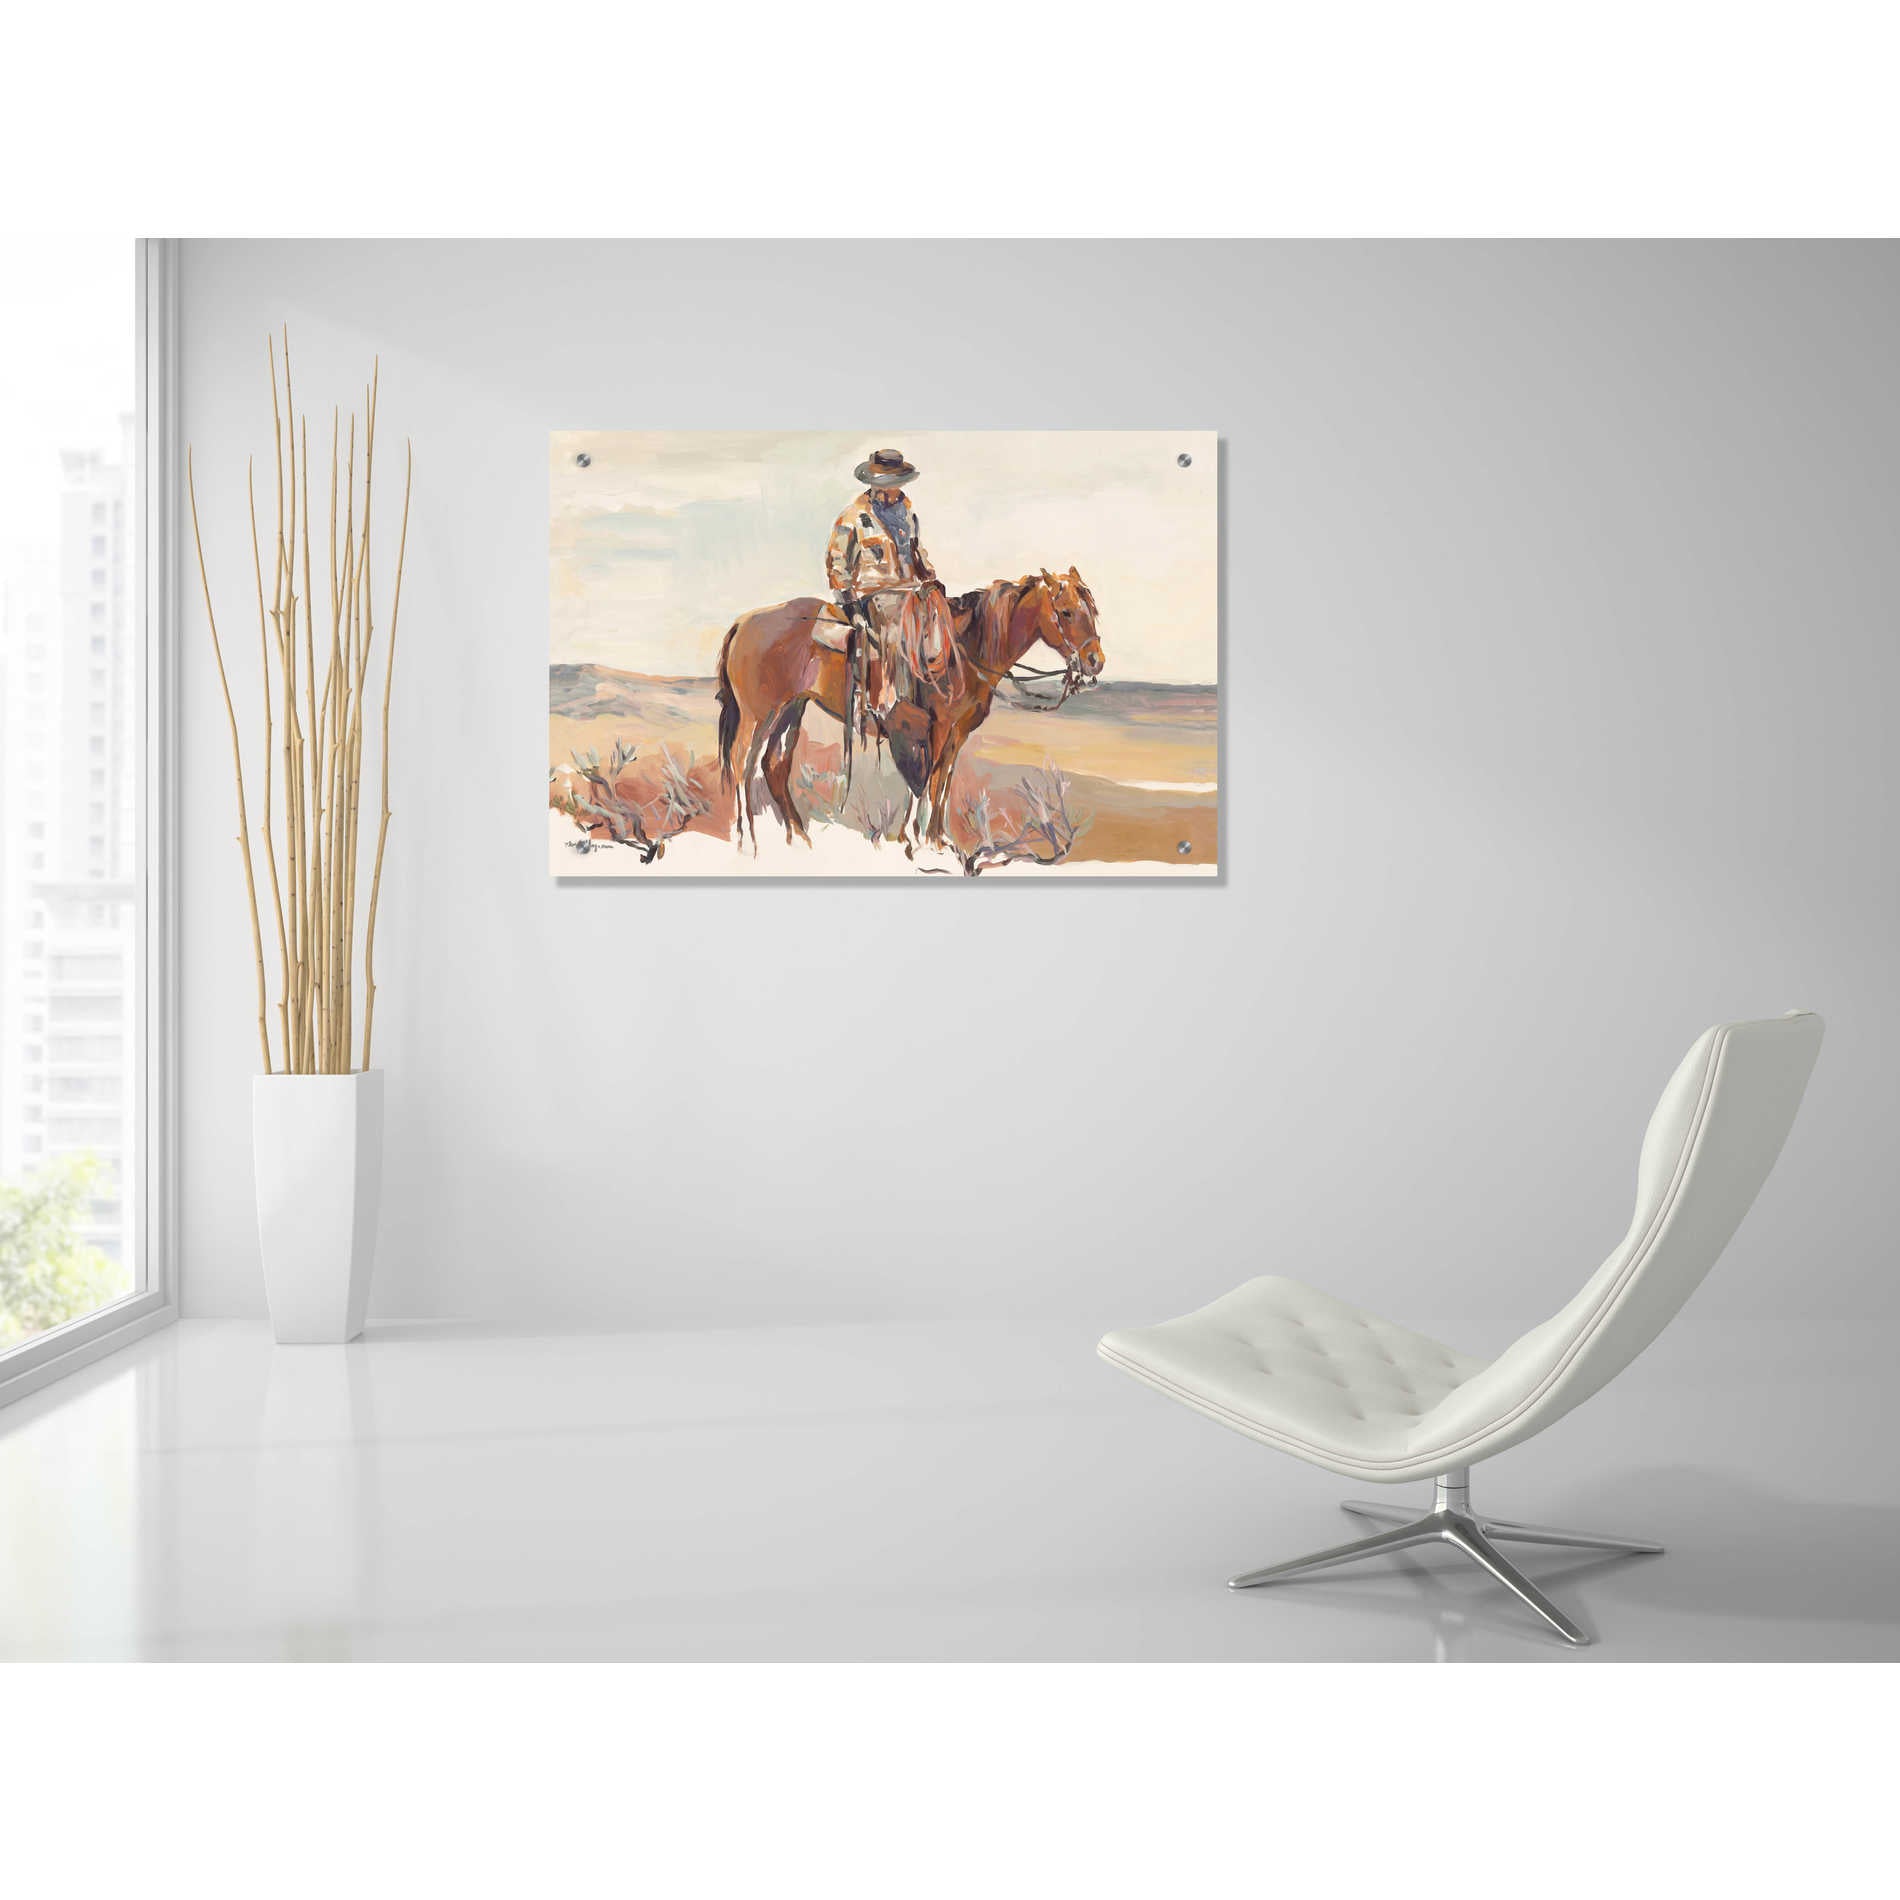 Epic Art 'Western Rider Warm' by Marilyn Hageman, Acrylic Glass Wall Art,36x24